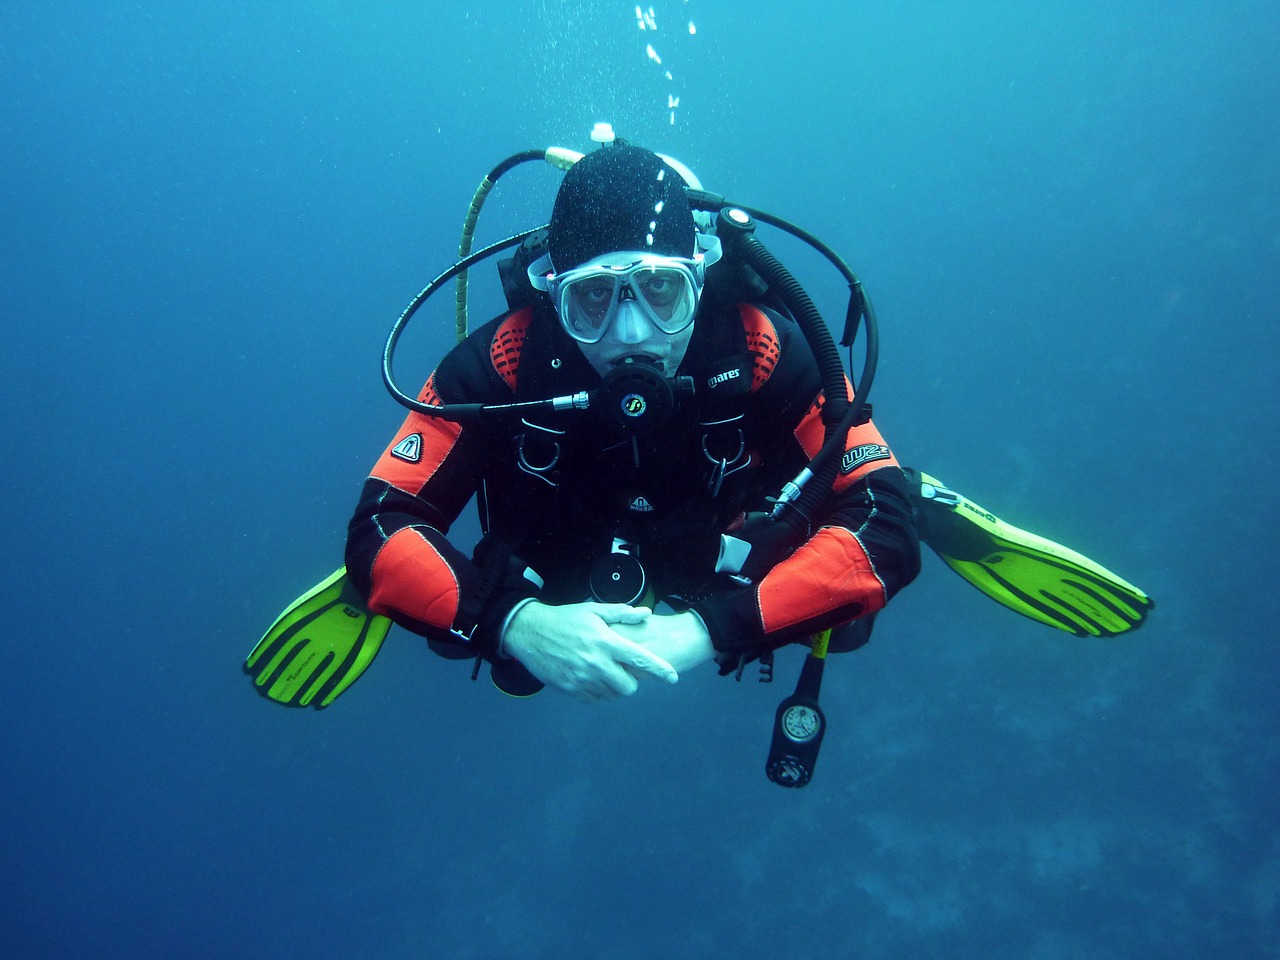 Jakie wyposażenie i akcesoria warto mieć przy sobie w trakcie nurkowania?